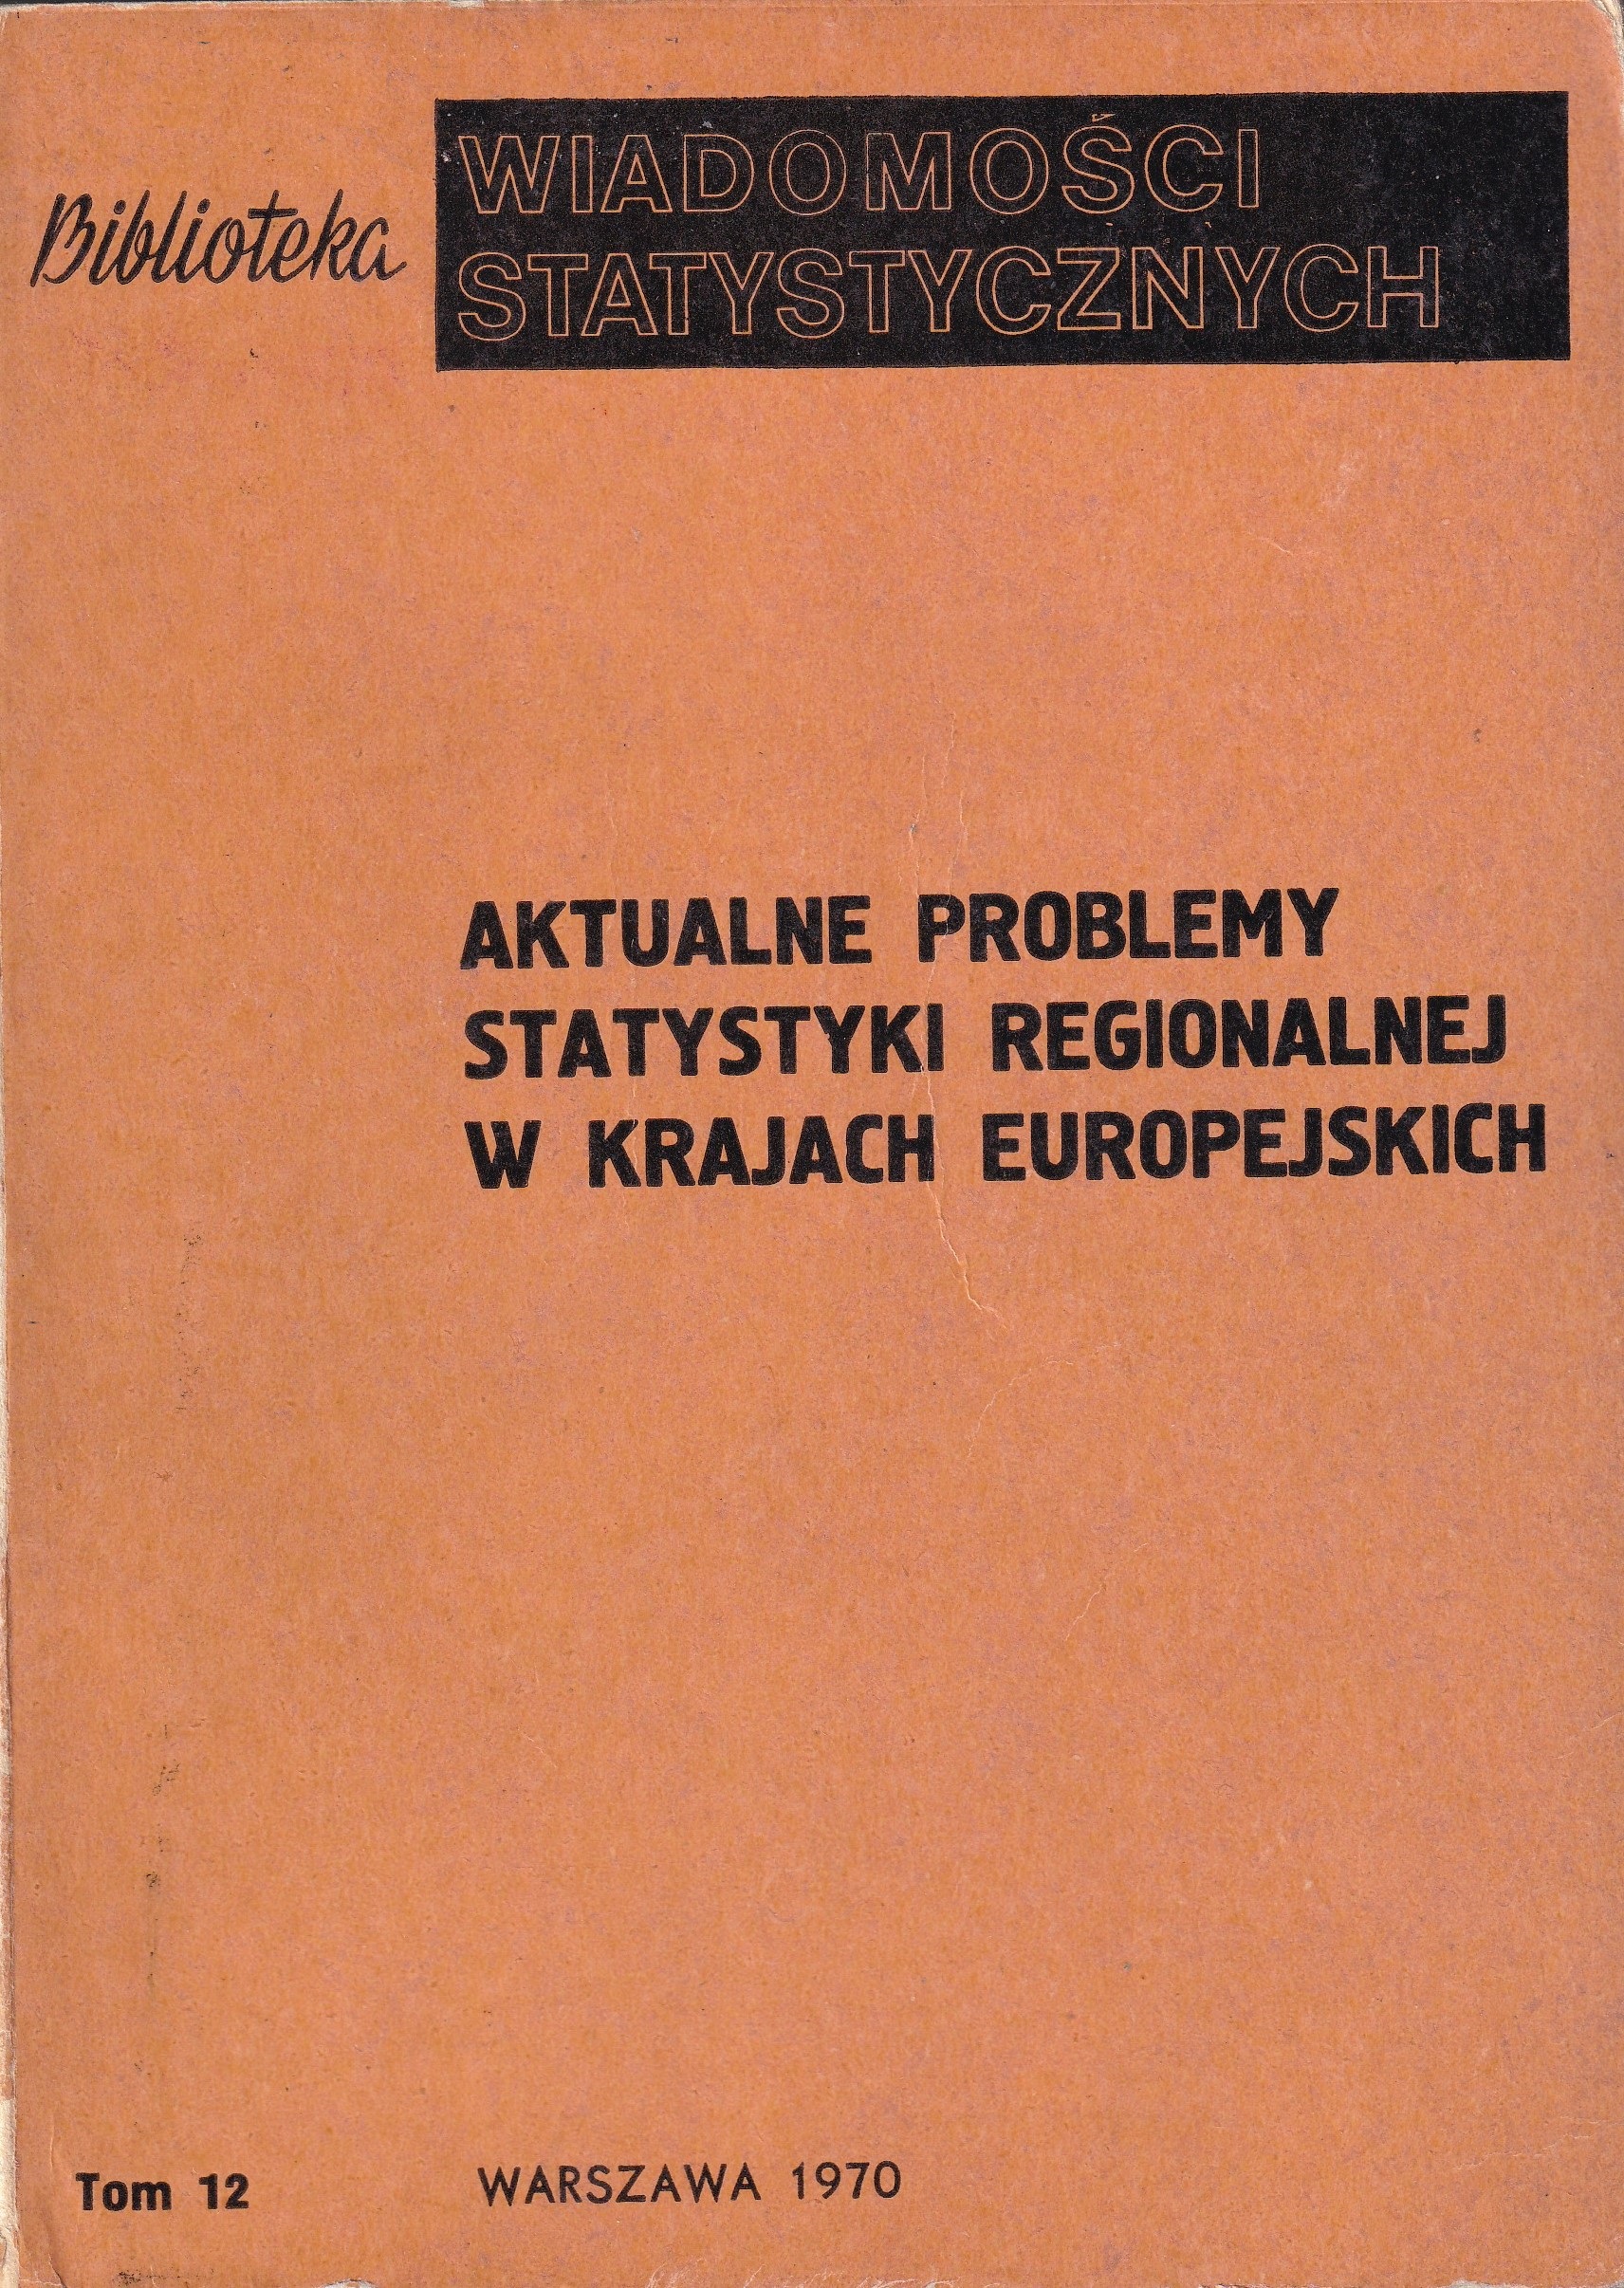 Okładka monografi - Aktualne problemy statystyki regionalnej w krajach europejskich